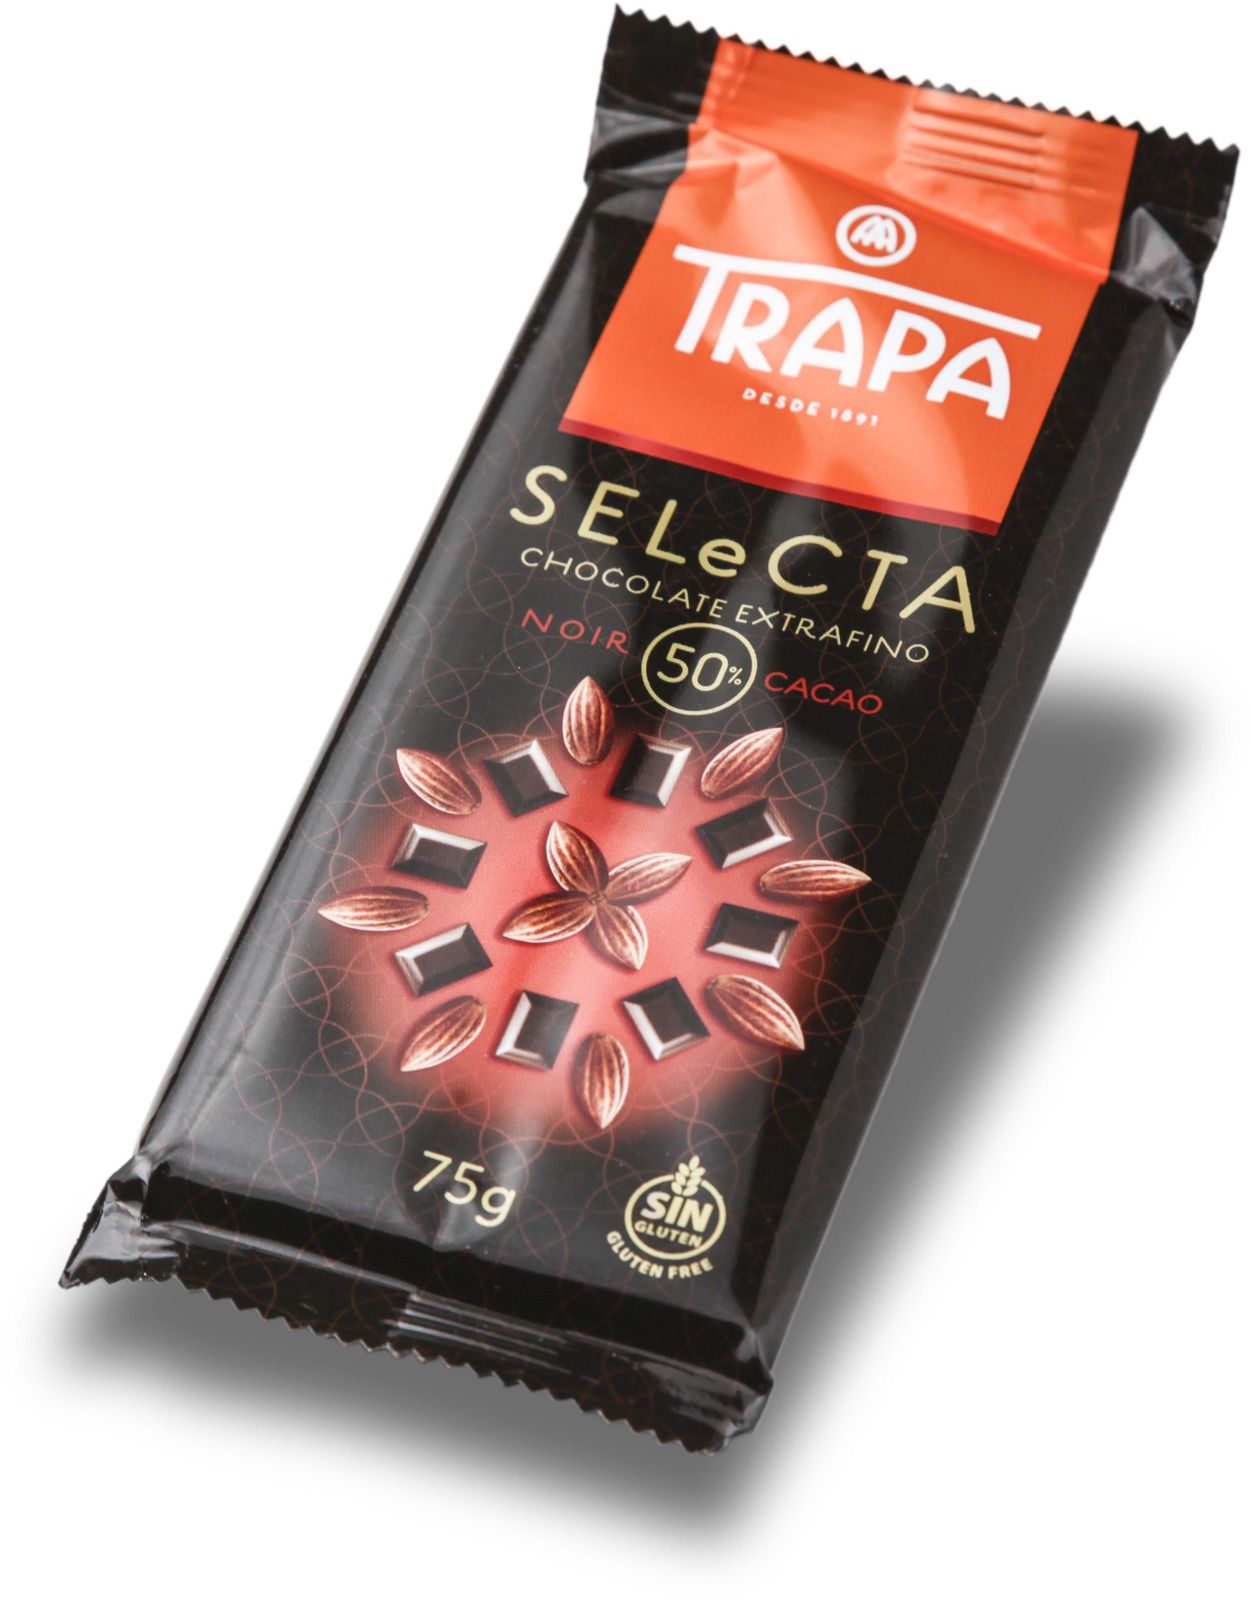   Trapa Selecta Bar, 50%, 75 